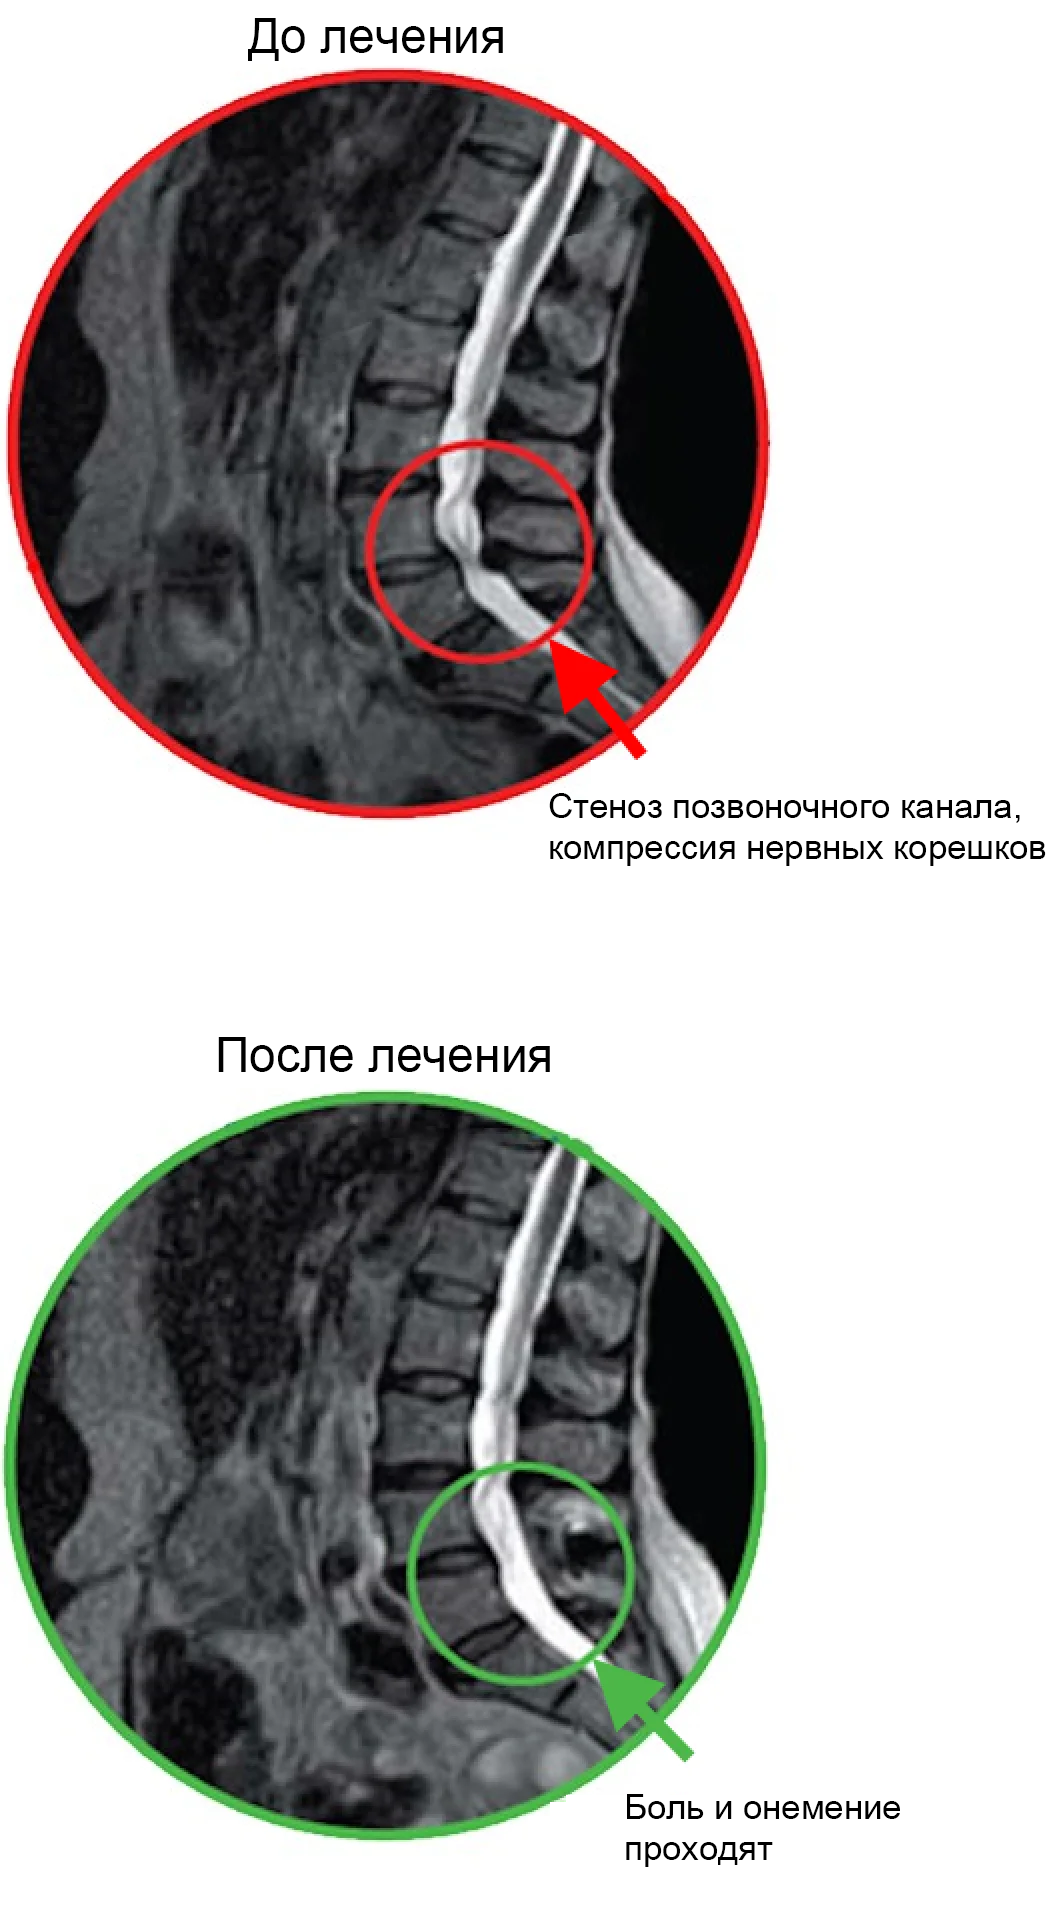 Снимки МРТ до и после лечения